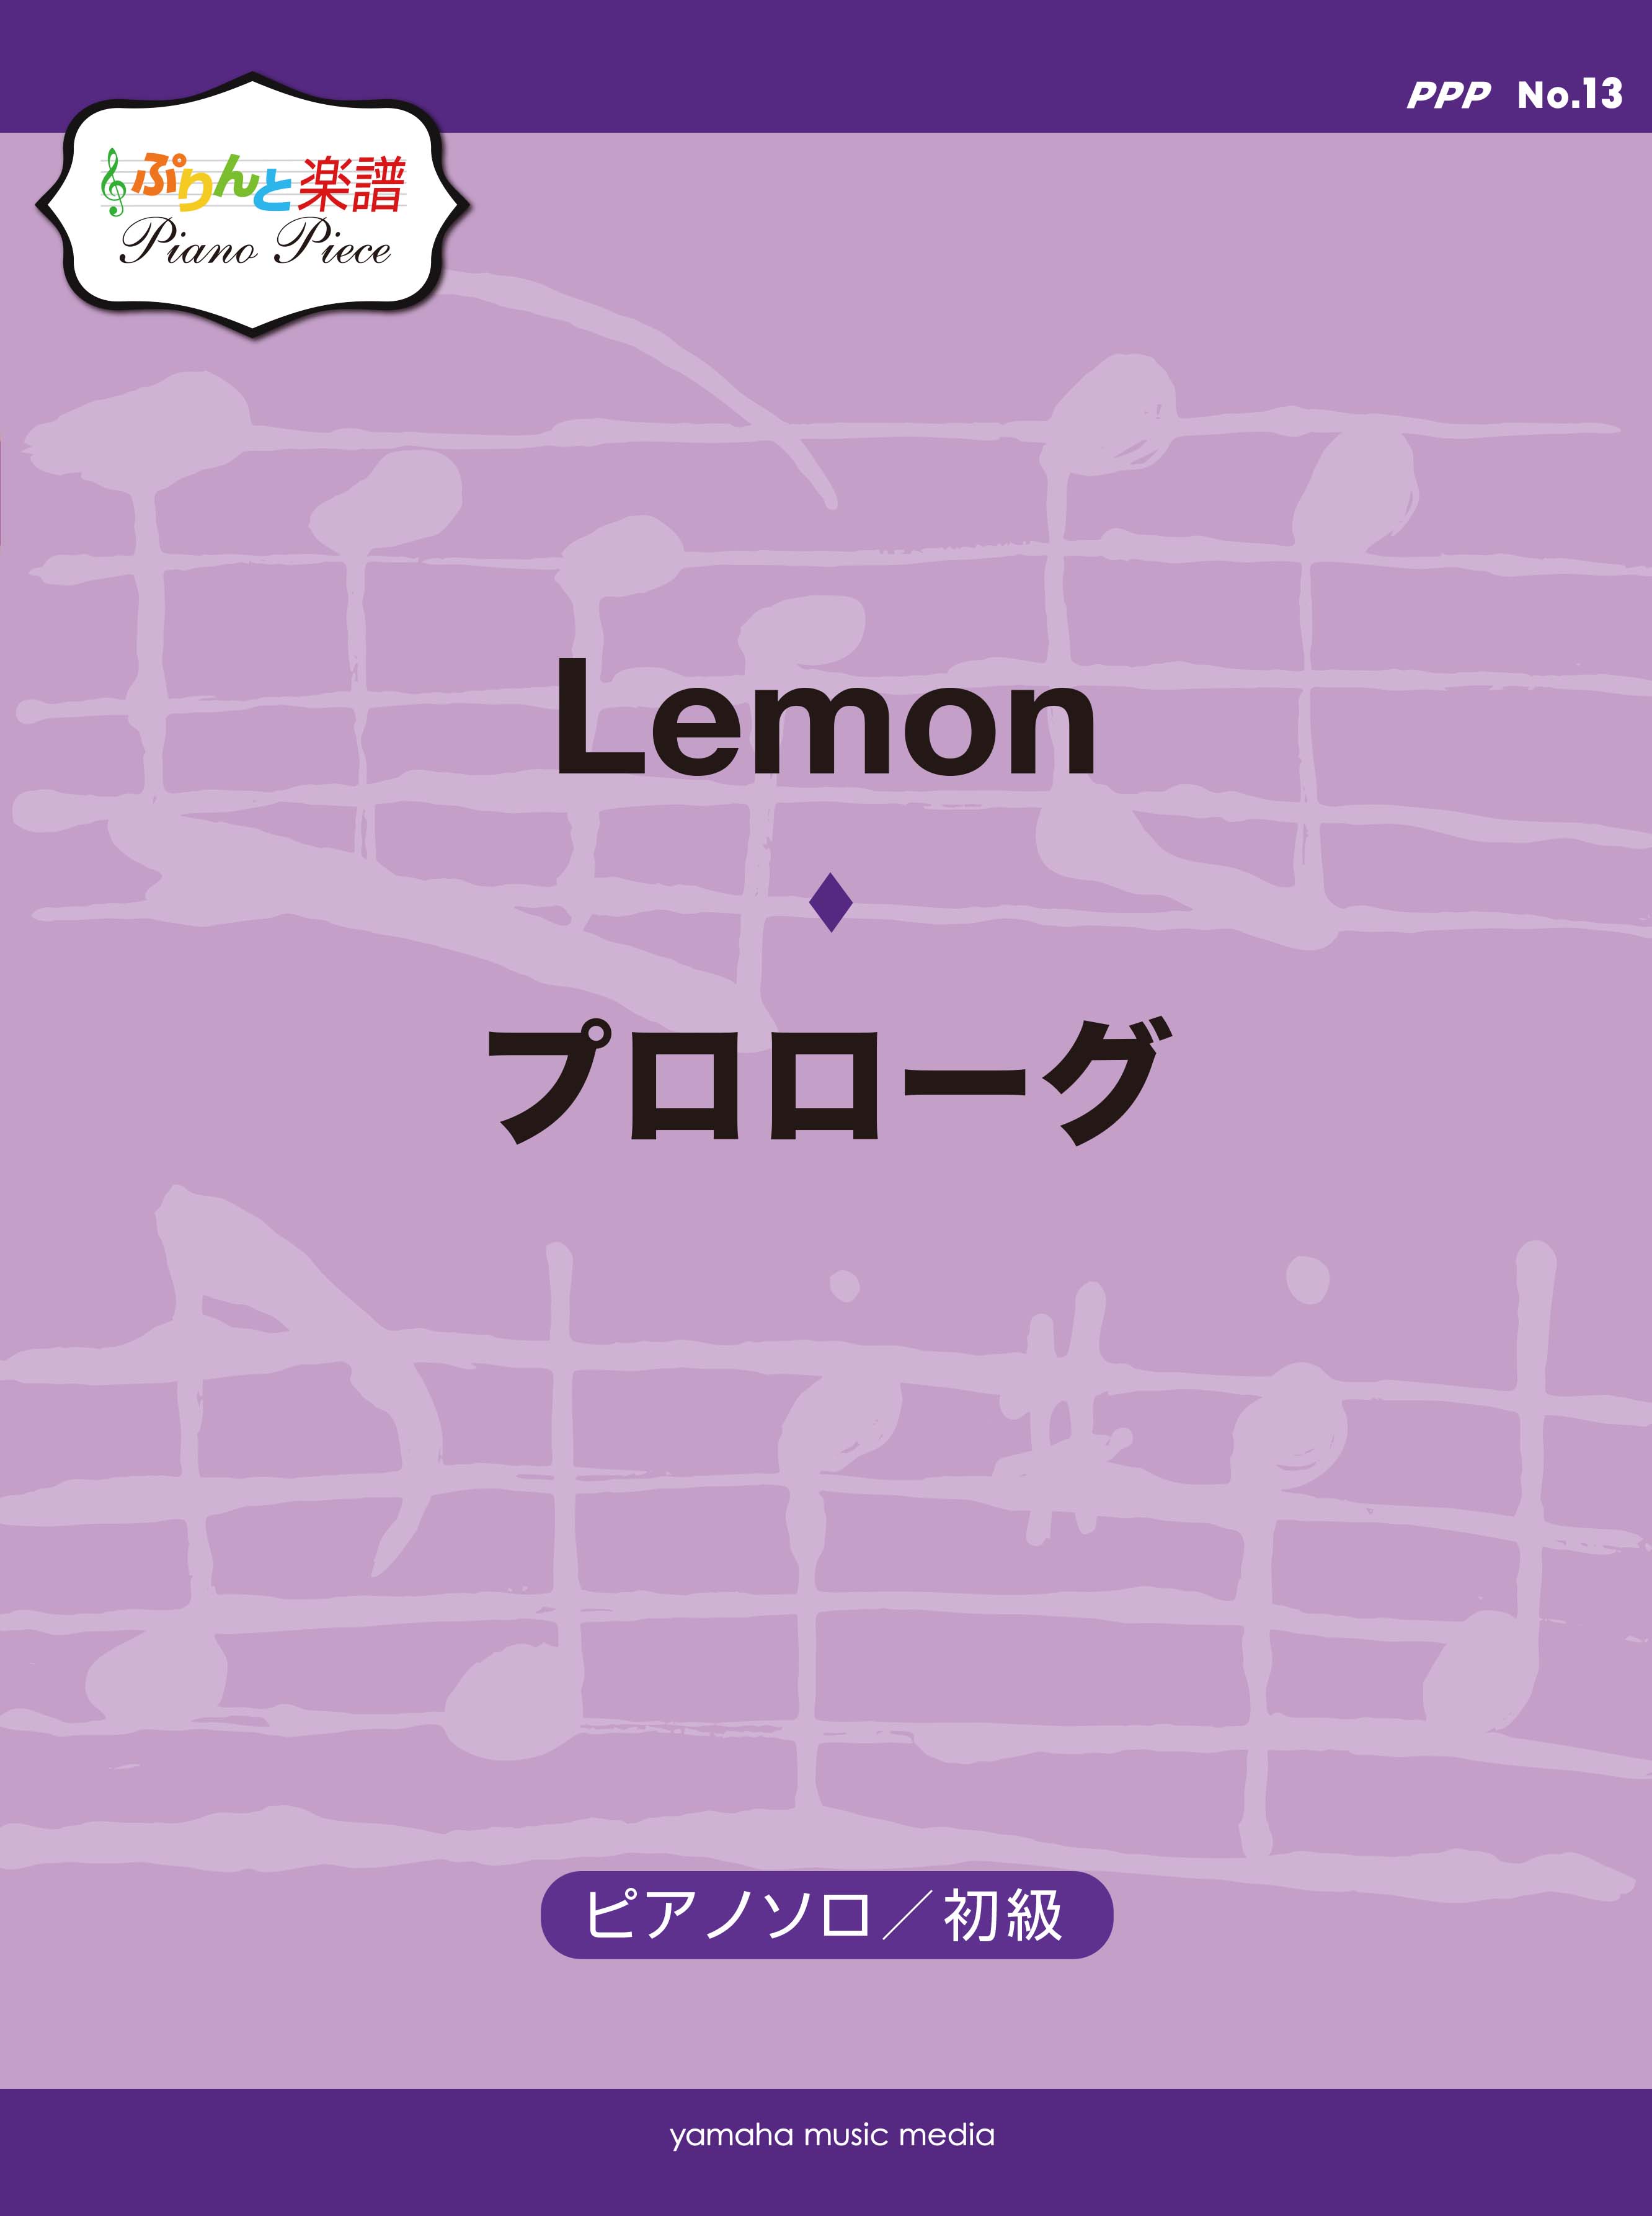 ぷりんと楽譜ピアノピース Ppp No 13 Lemon 初級 プロローグ